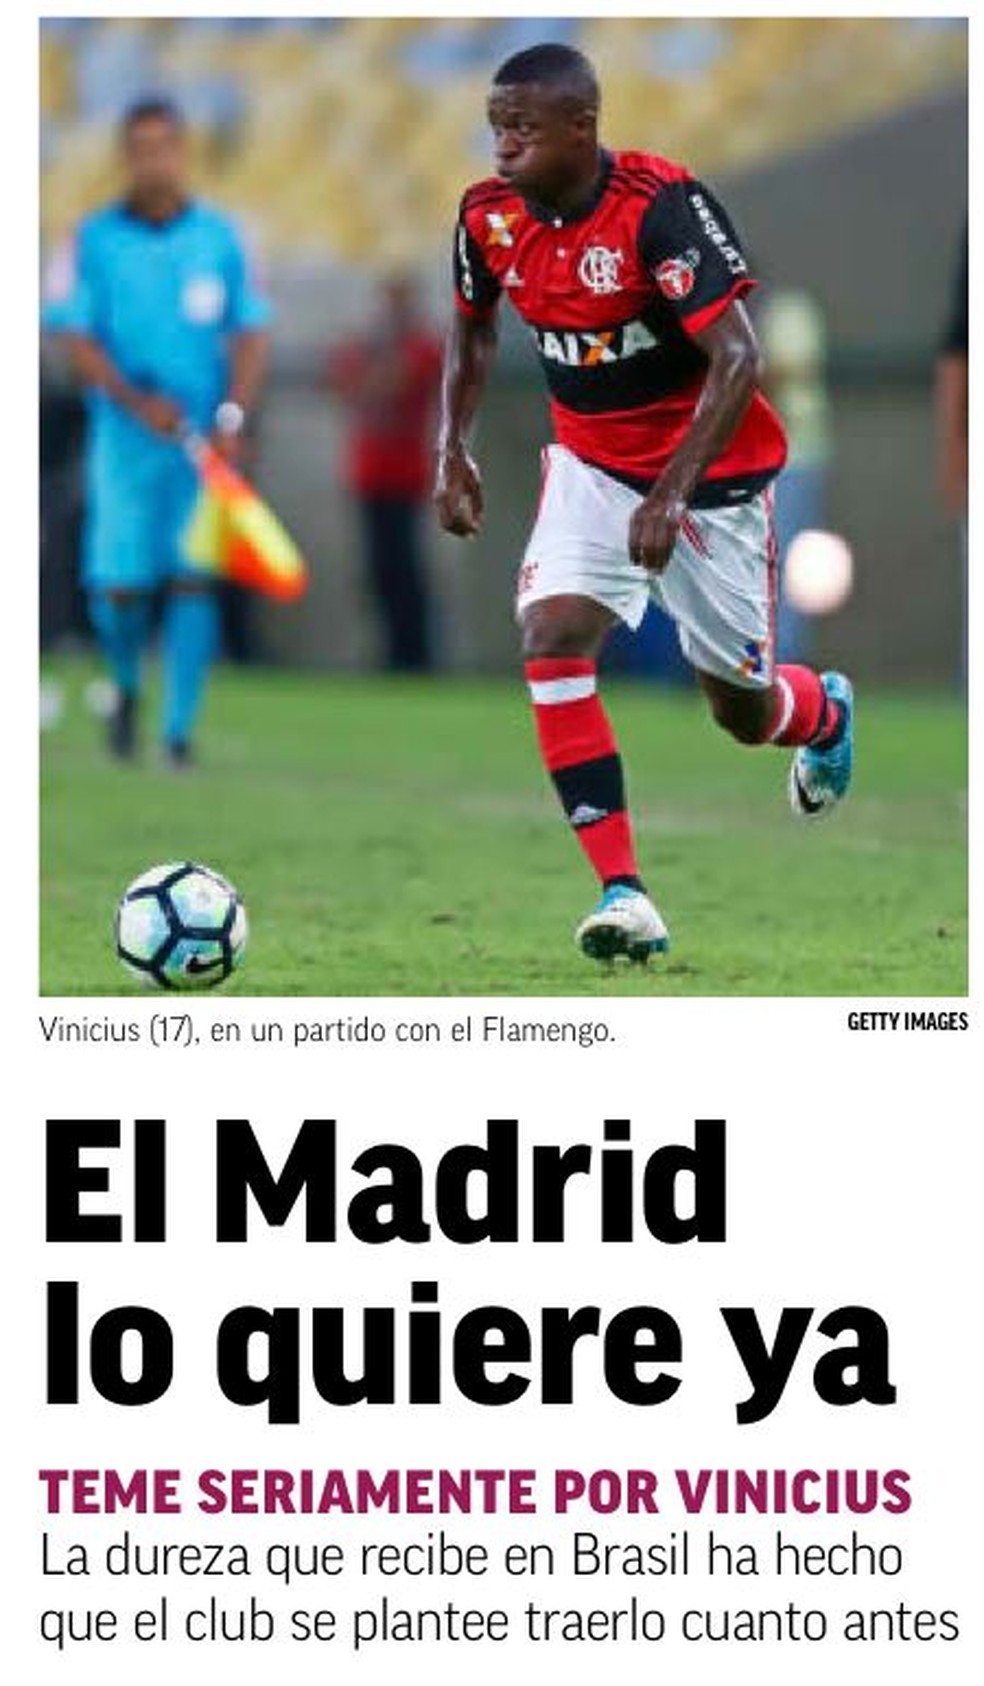 Vinicius tem seis gols pelo Flamengo em 42 jogos (Foto: Reprodução jornal "Marca")